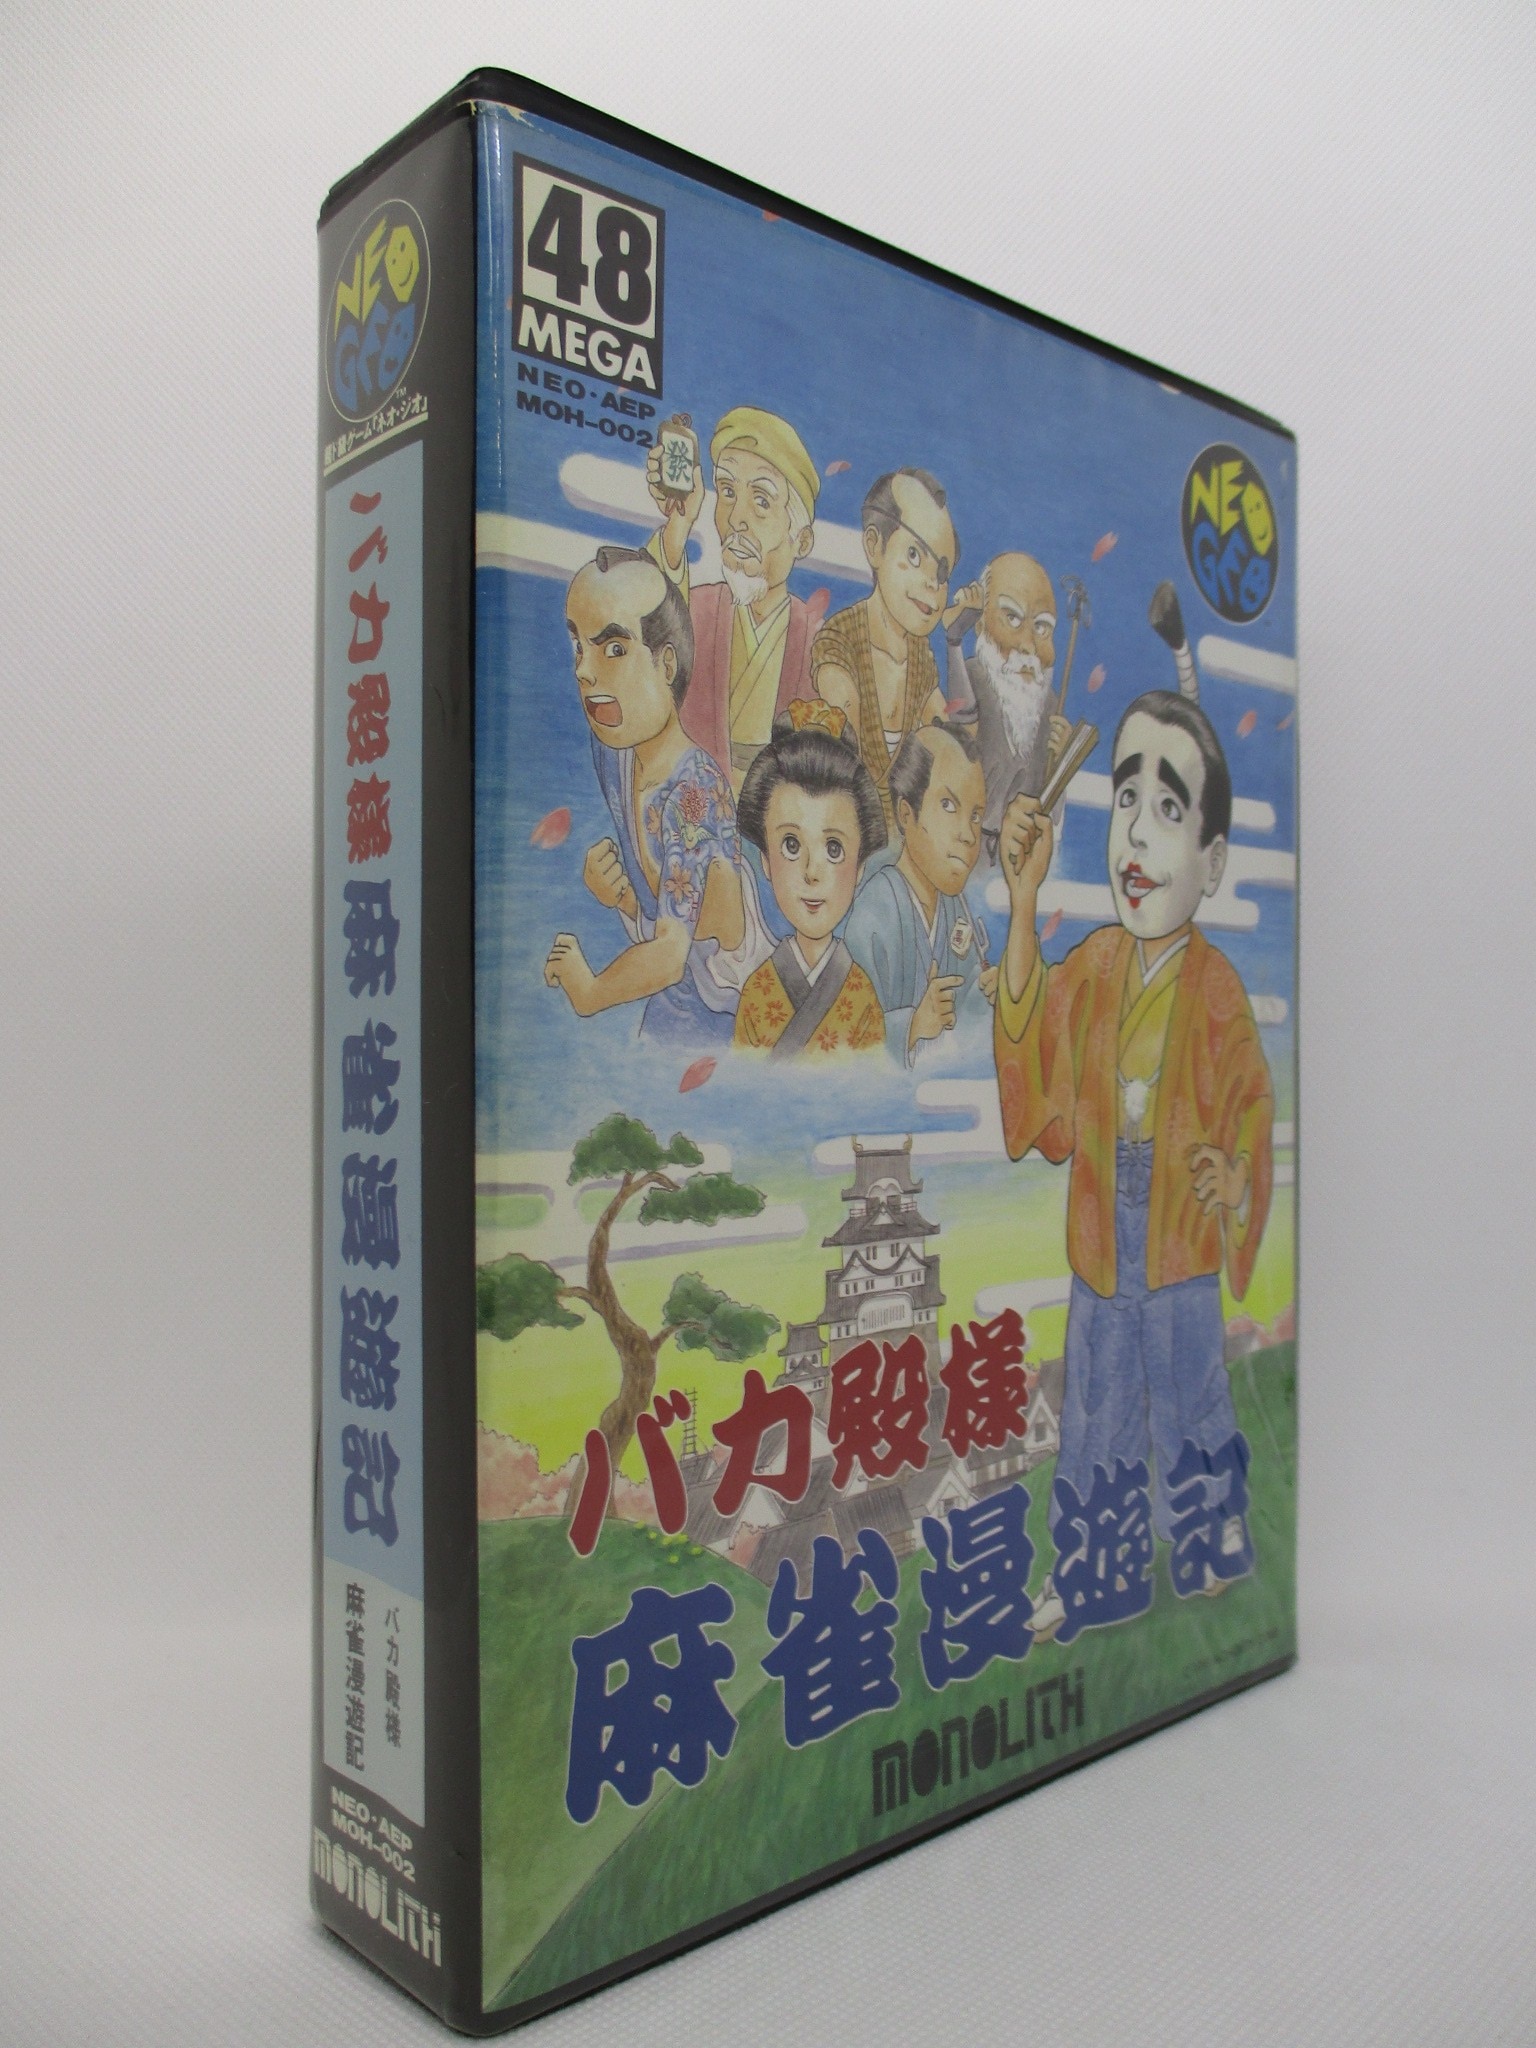 バカ殿様麻雀漫遊記 - DVD/ブルーレイ